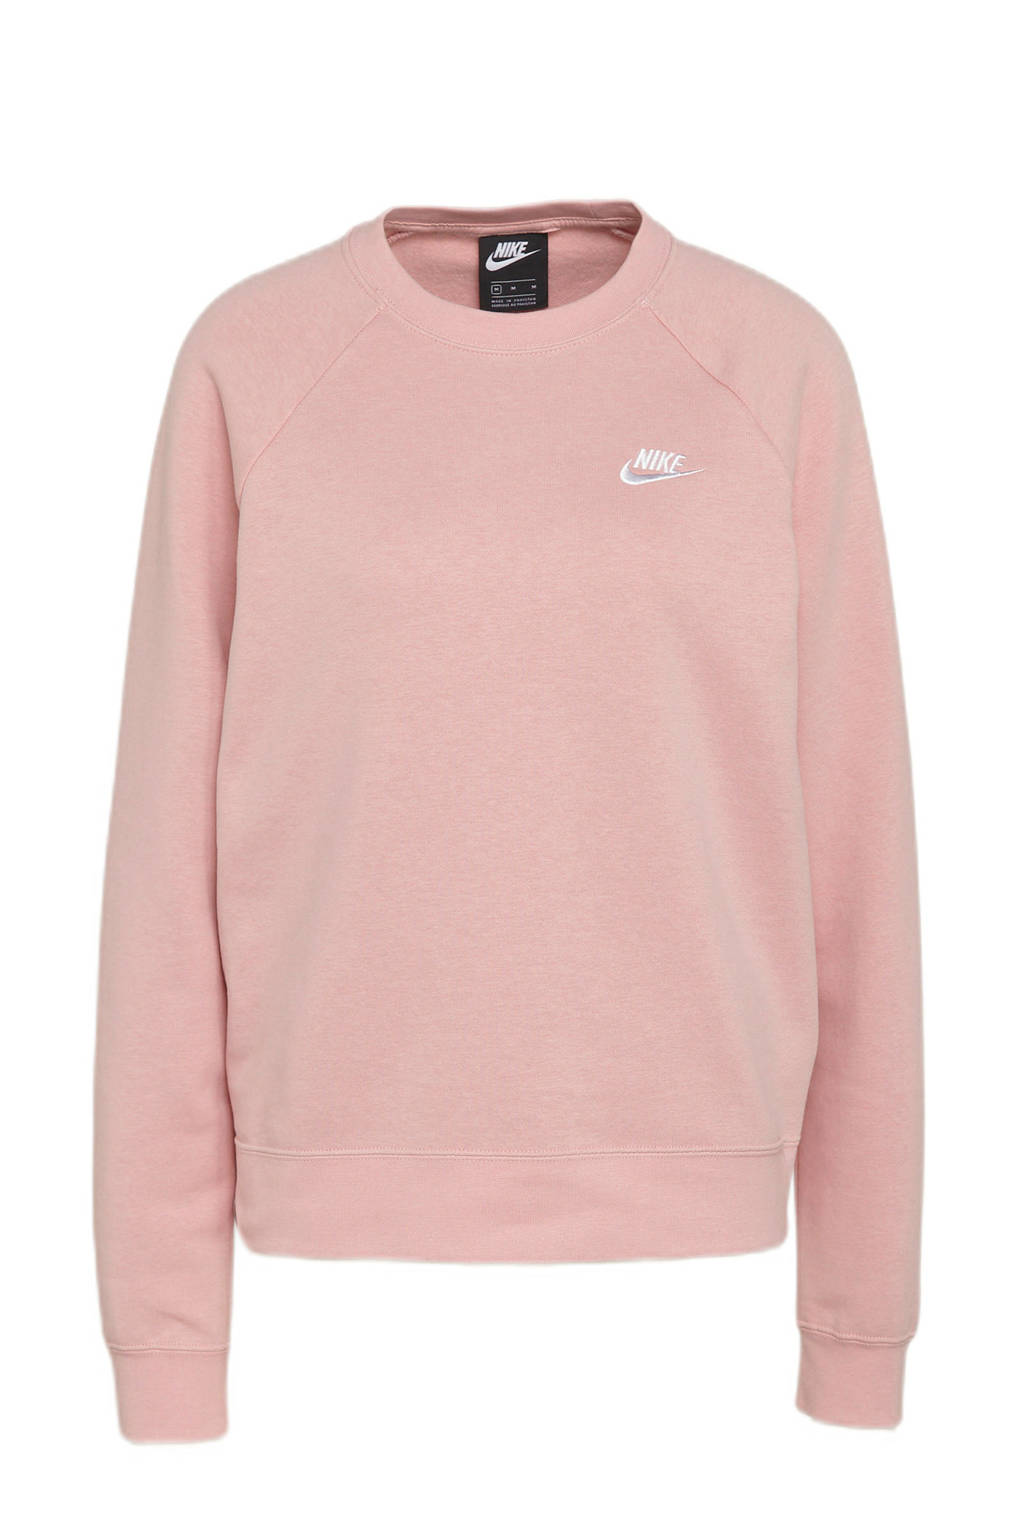 Nike sweater roze/wit, Roze/wit